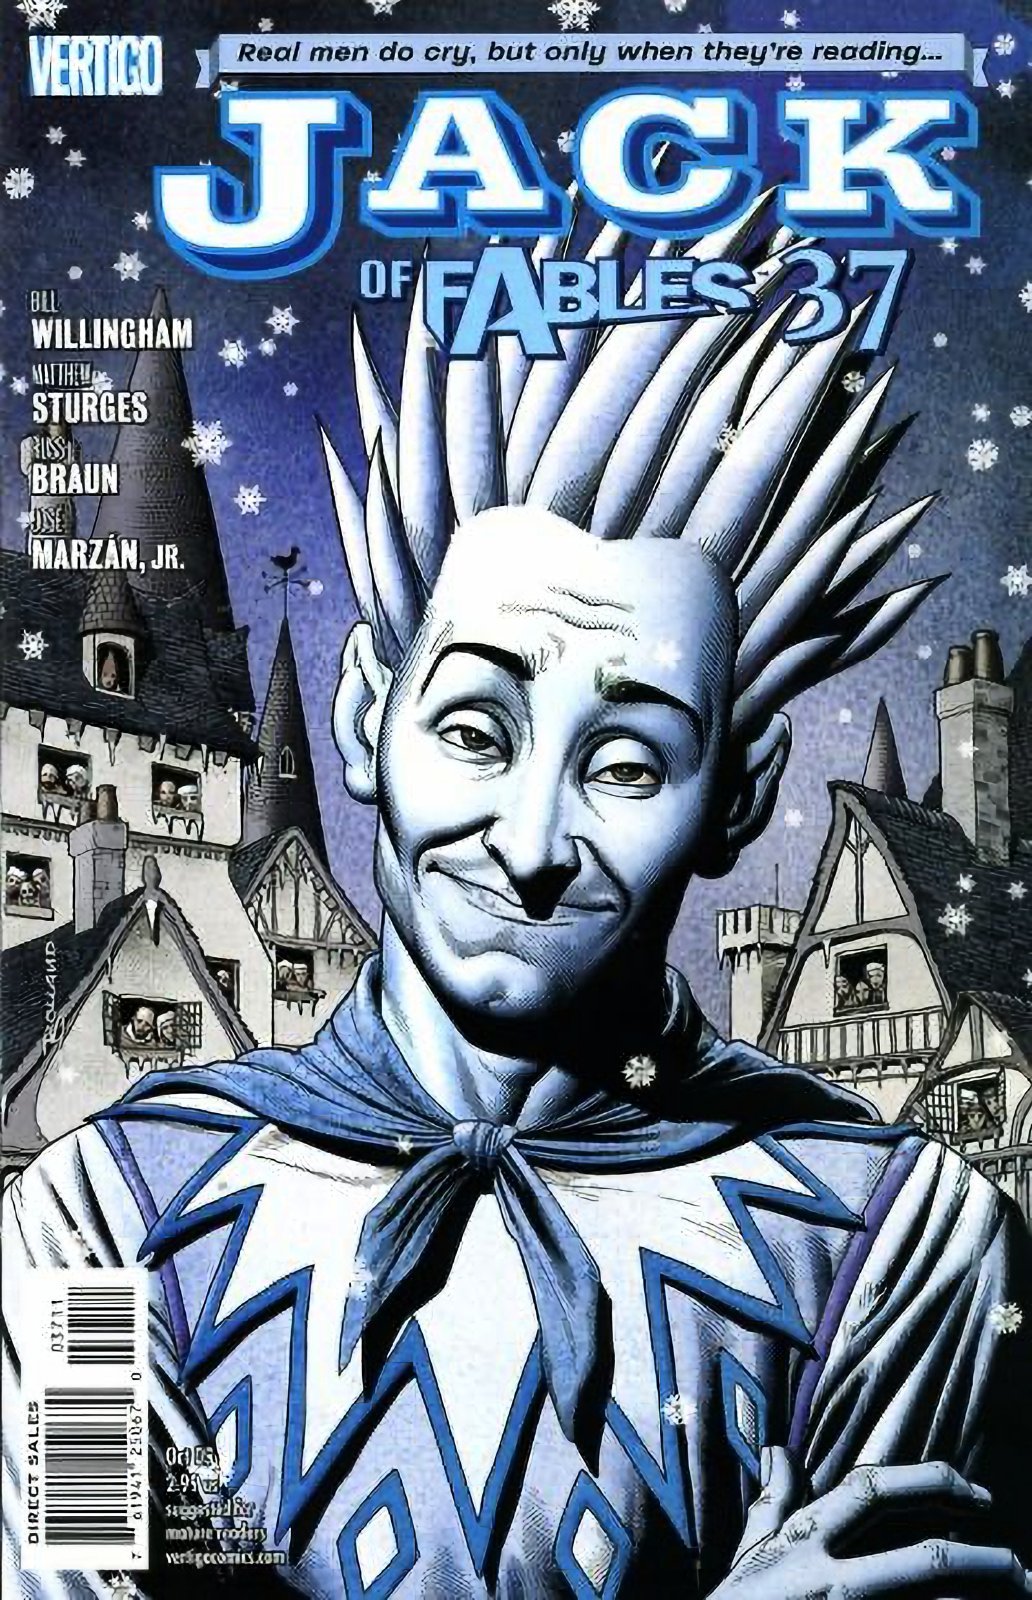 Jack of Fables #37 (2006-2011) Vertigo Comics